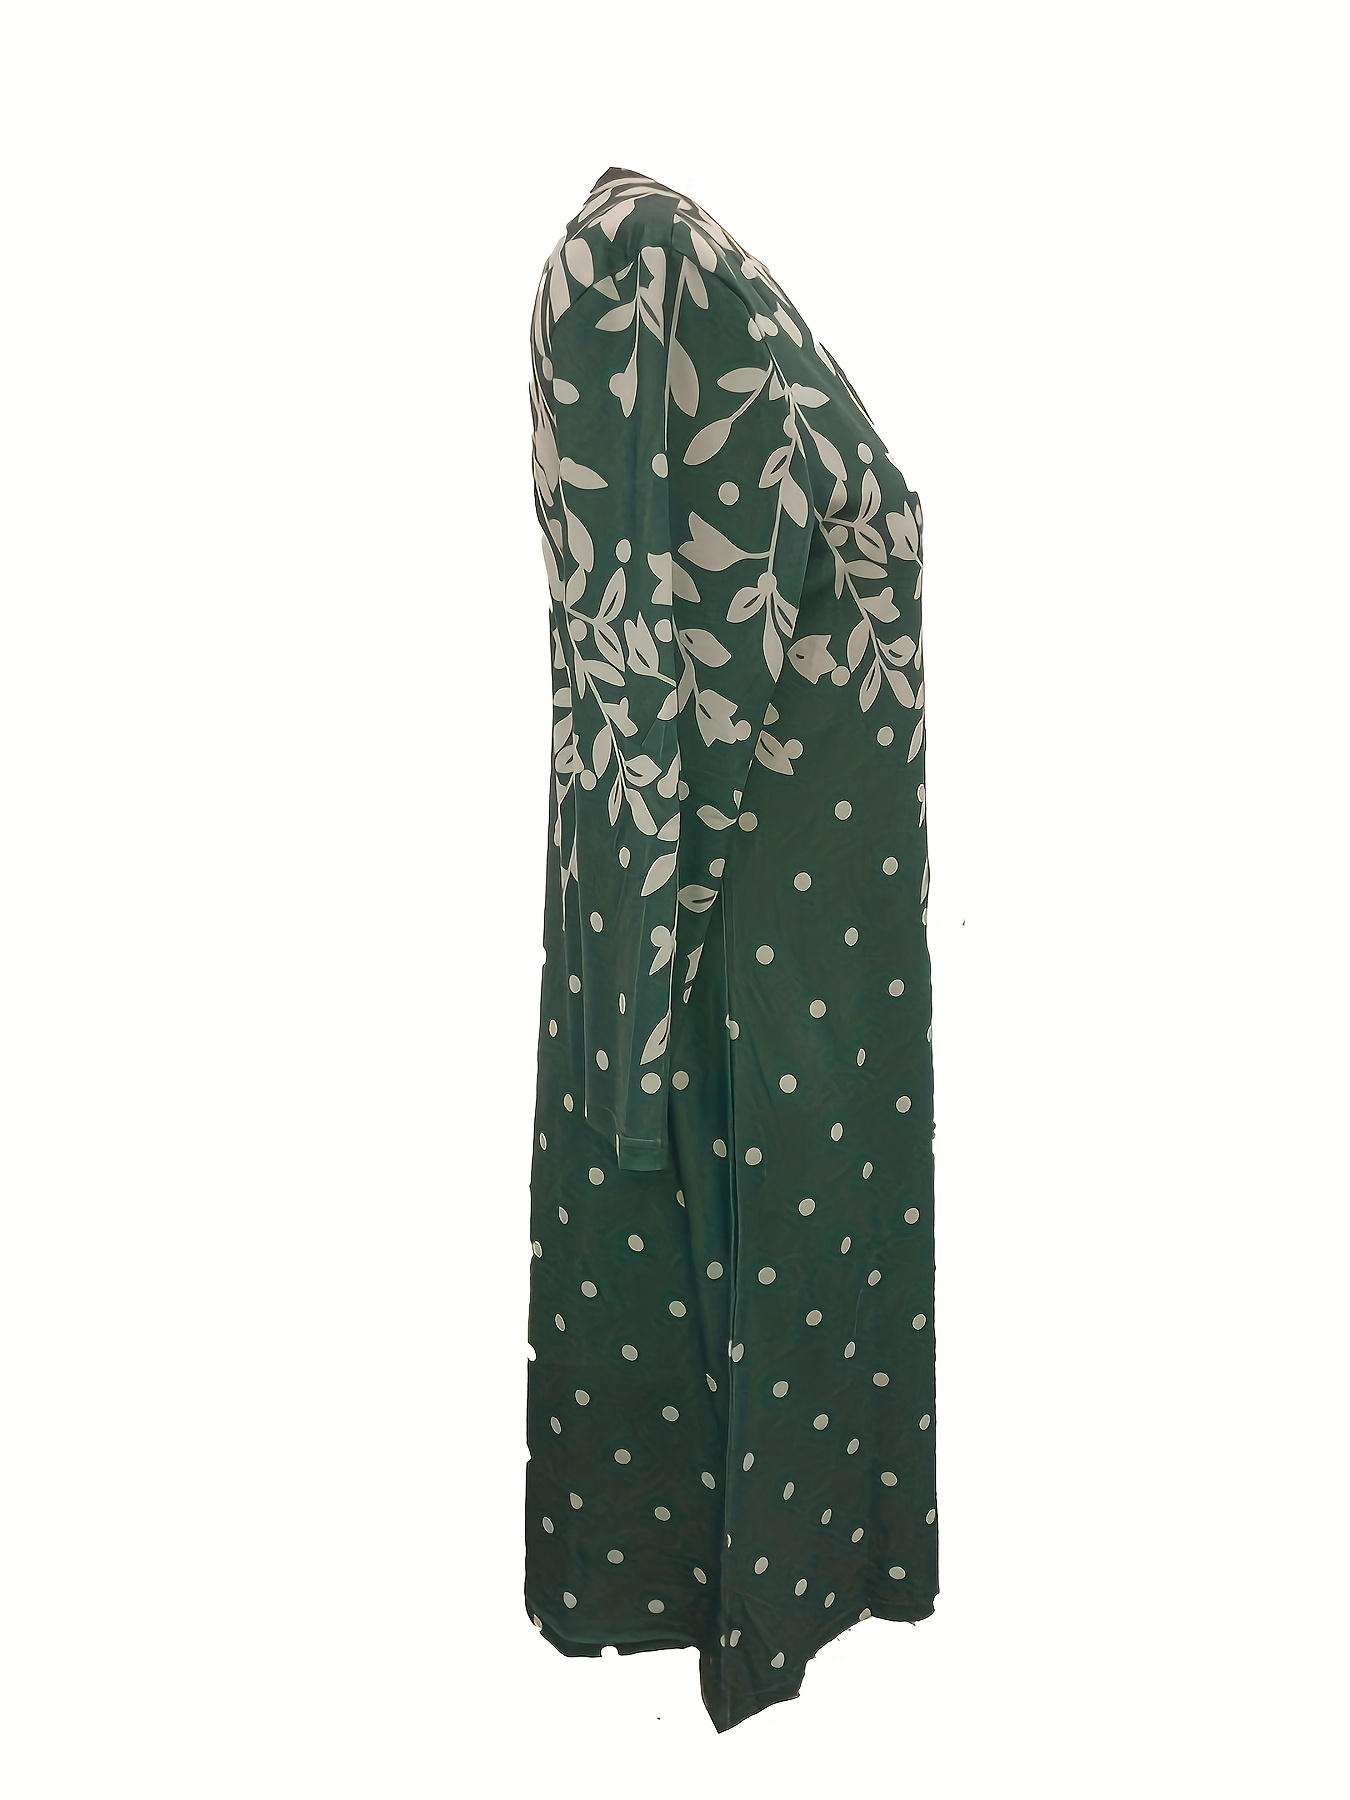 Φόρεμα Με Floral Print Απλό, Casual Φόρεμα Με Λαιμόκοψη Με Μακρυμάνικο, Γυναικεία Ρούχα